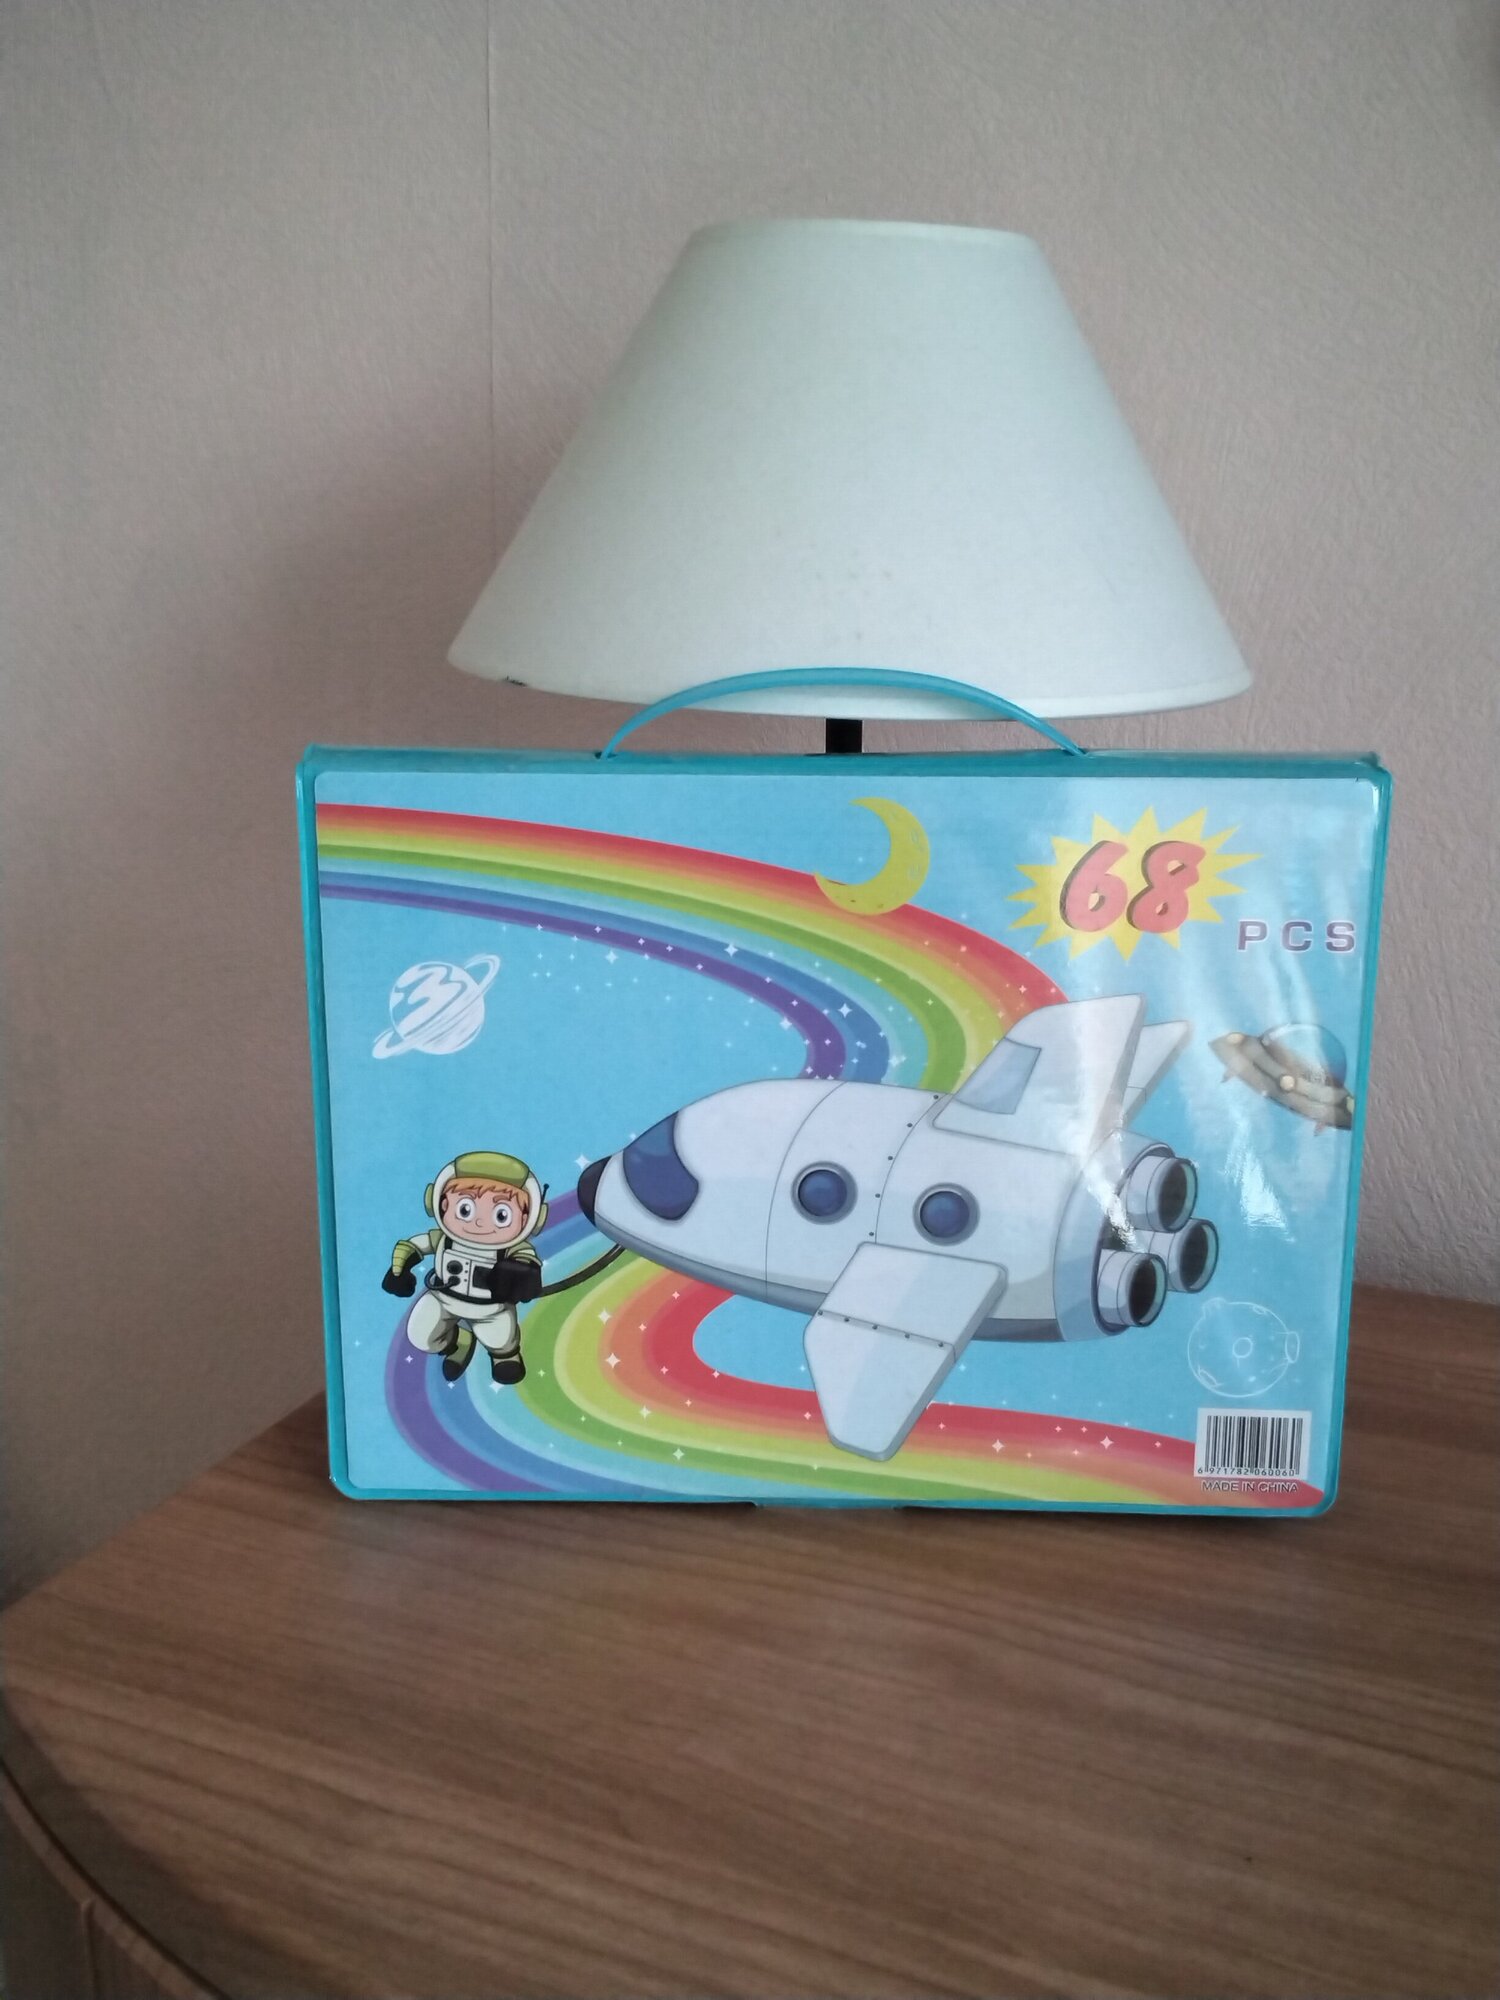 Набор для детского творчества Basir 68, в голубом портфеле с космонавтом.